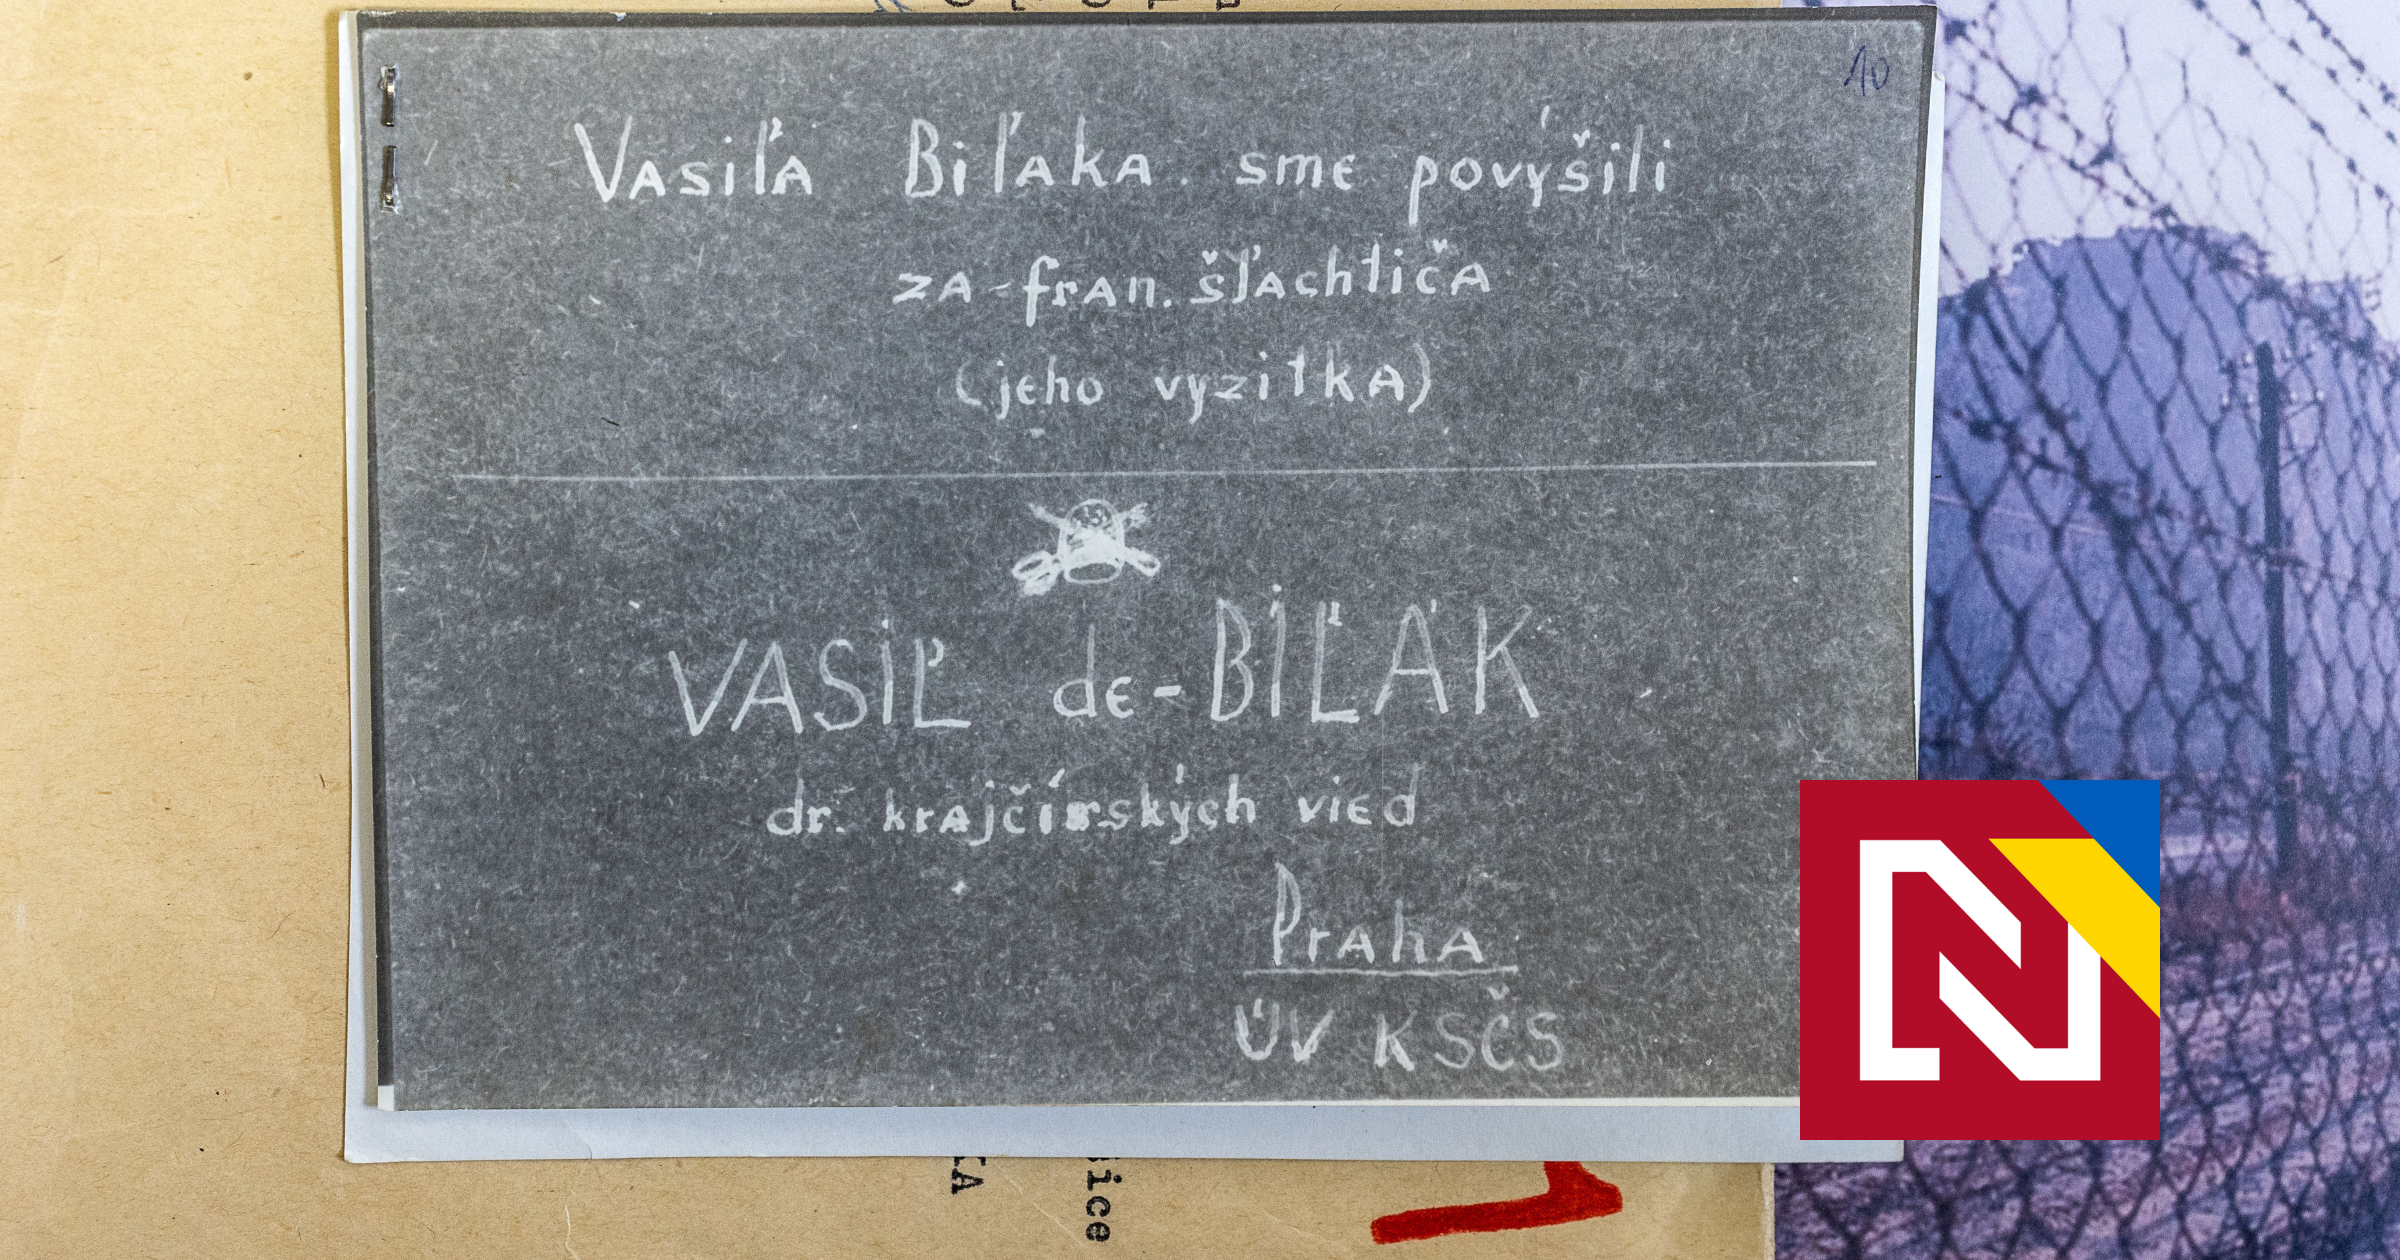 Il a transformé le communiste Biľak en noble avec le titre de-Biľak.  Ils ont enquêté sur la blague comme diffamation de l’État